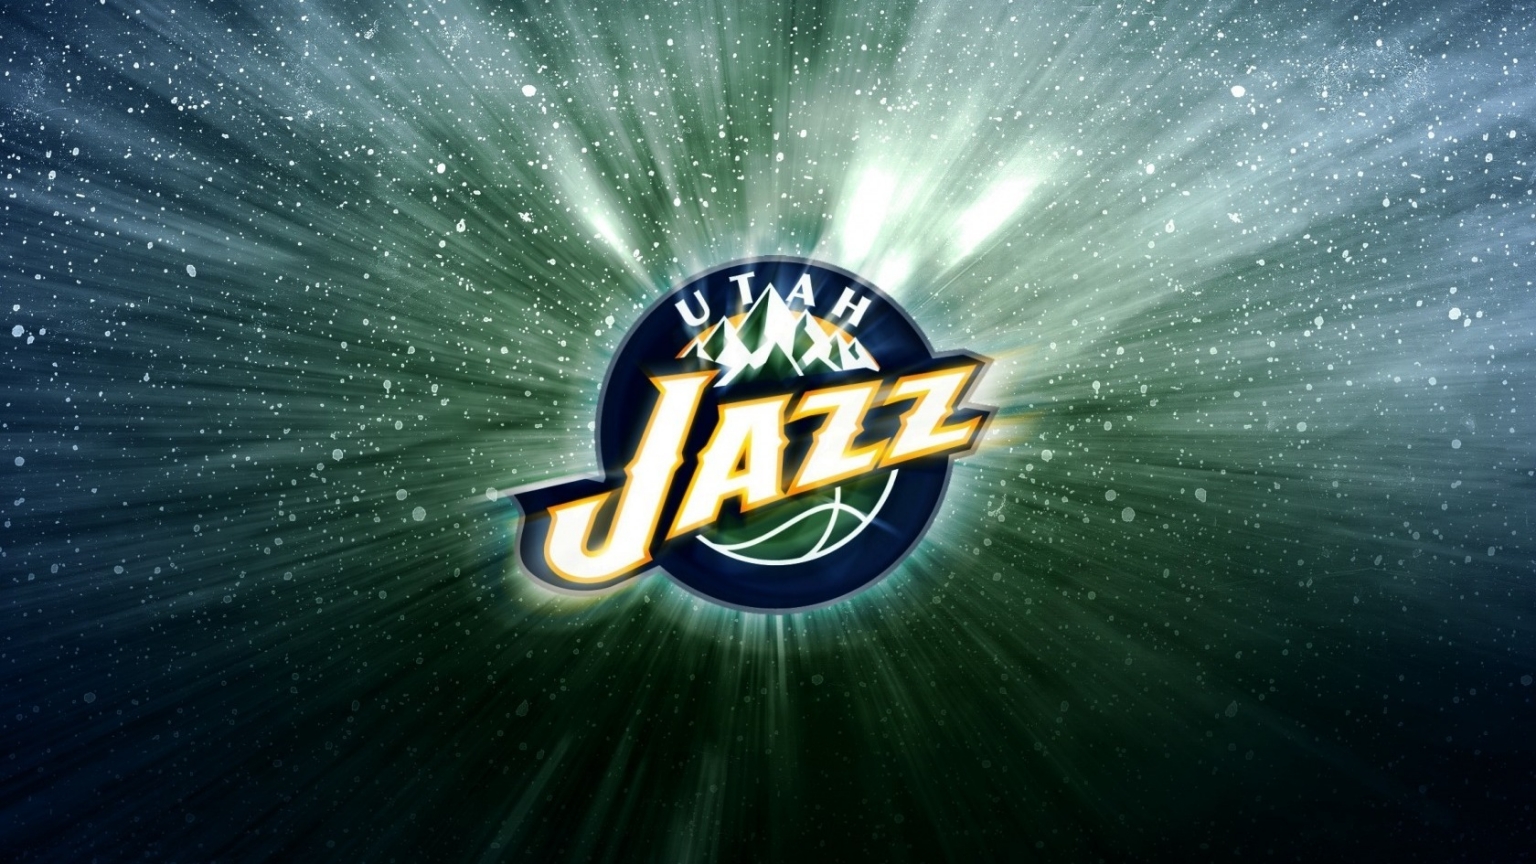 Utah Jazz  for 1536 x 864 HDTV resolution